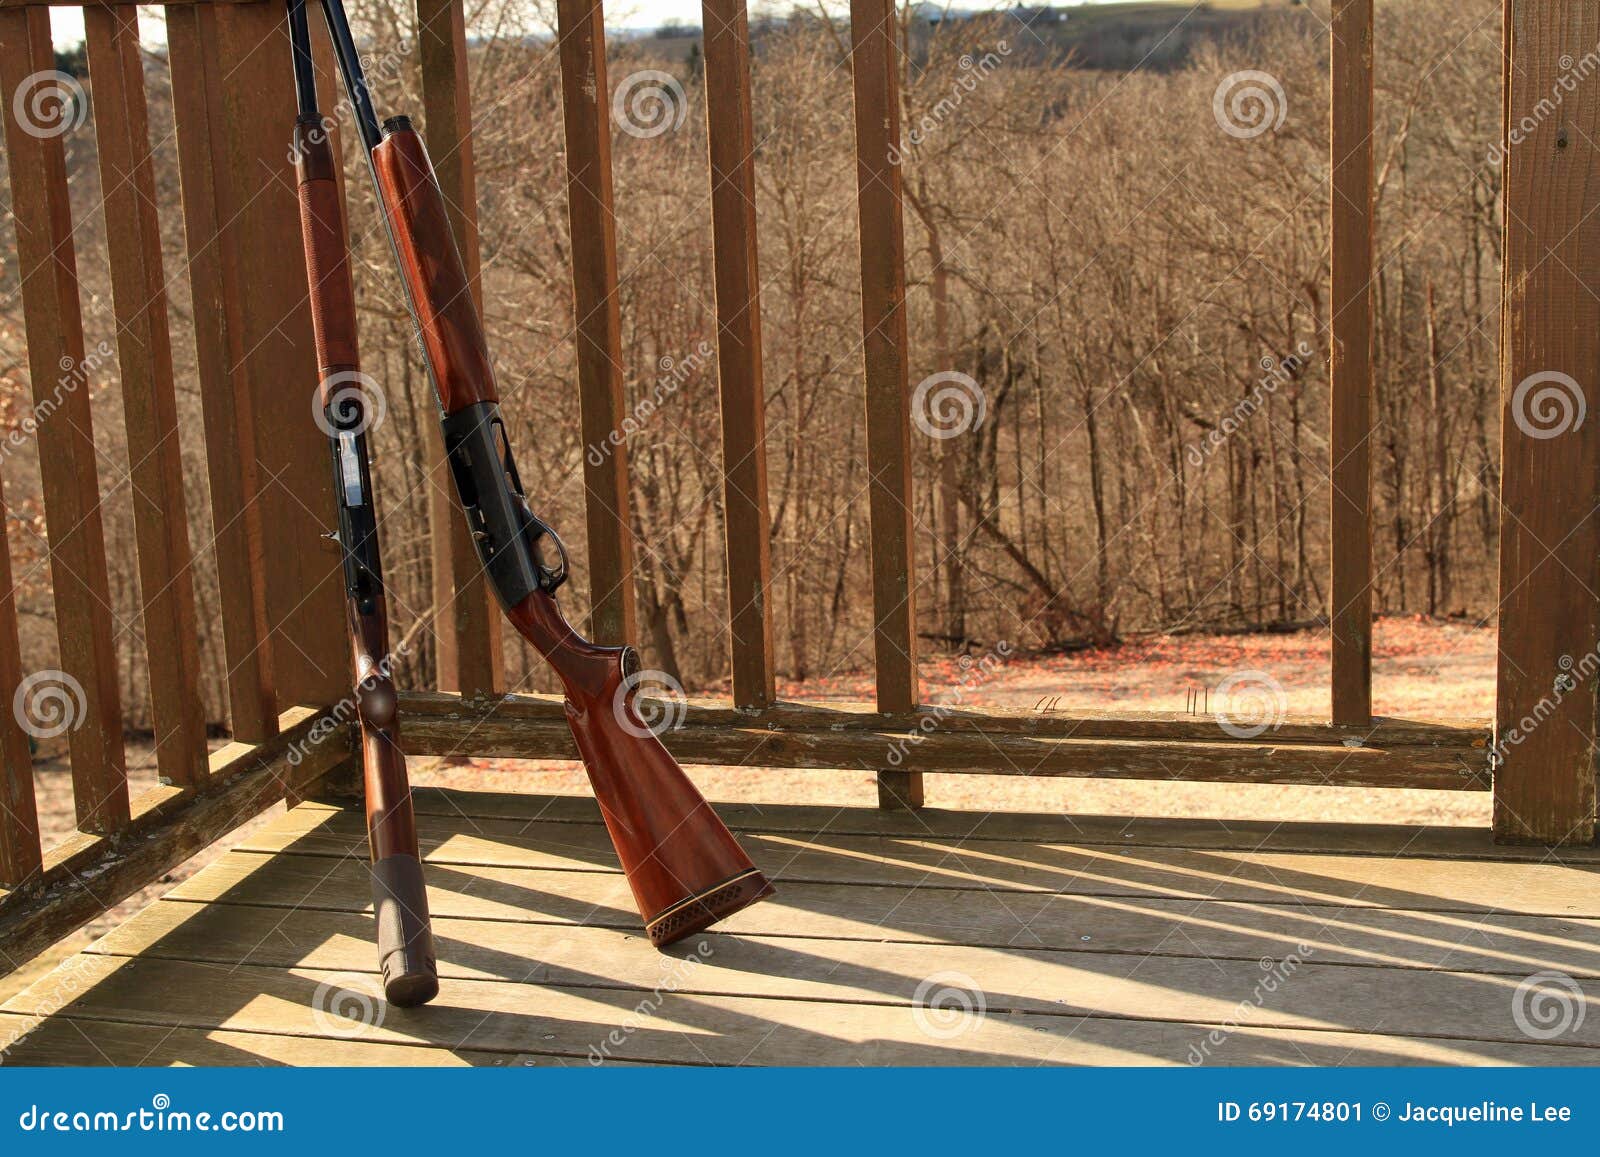 two shot guns at sporting clay range